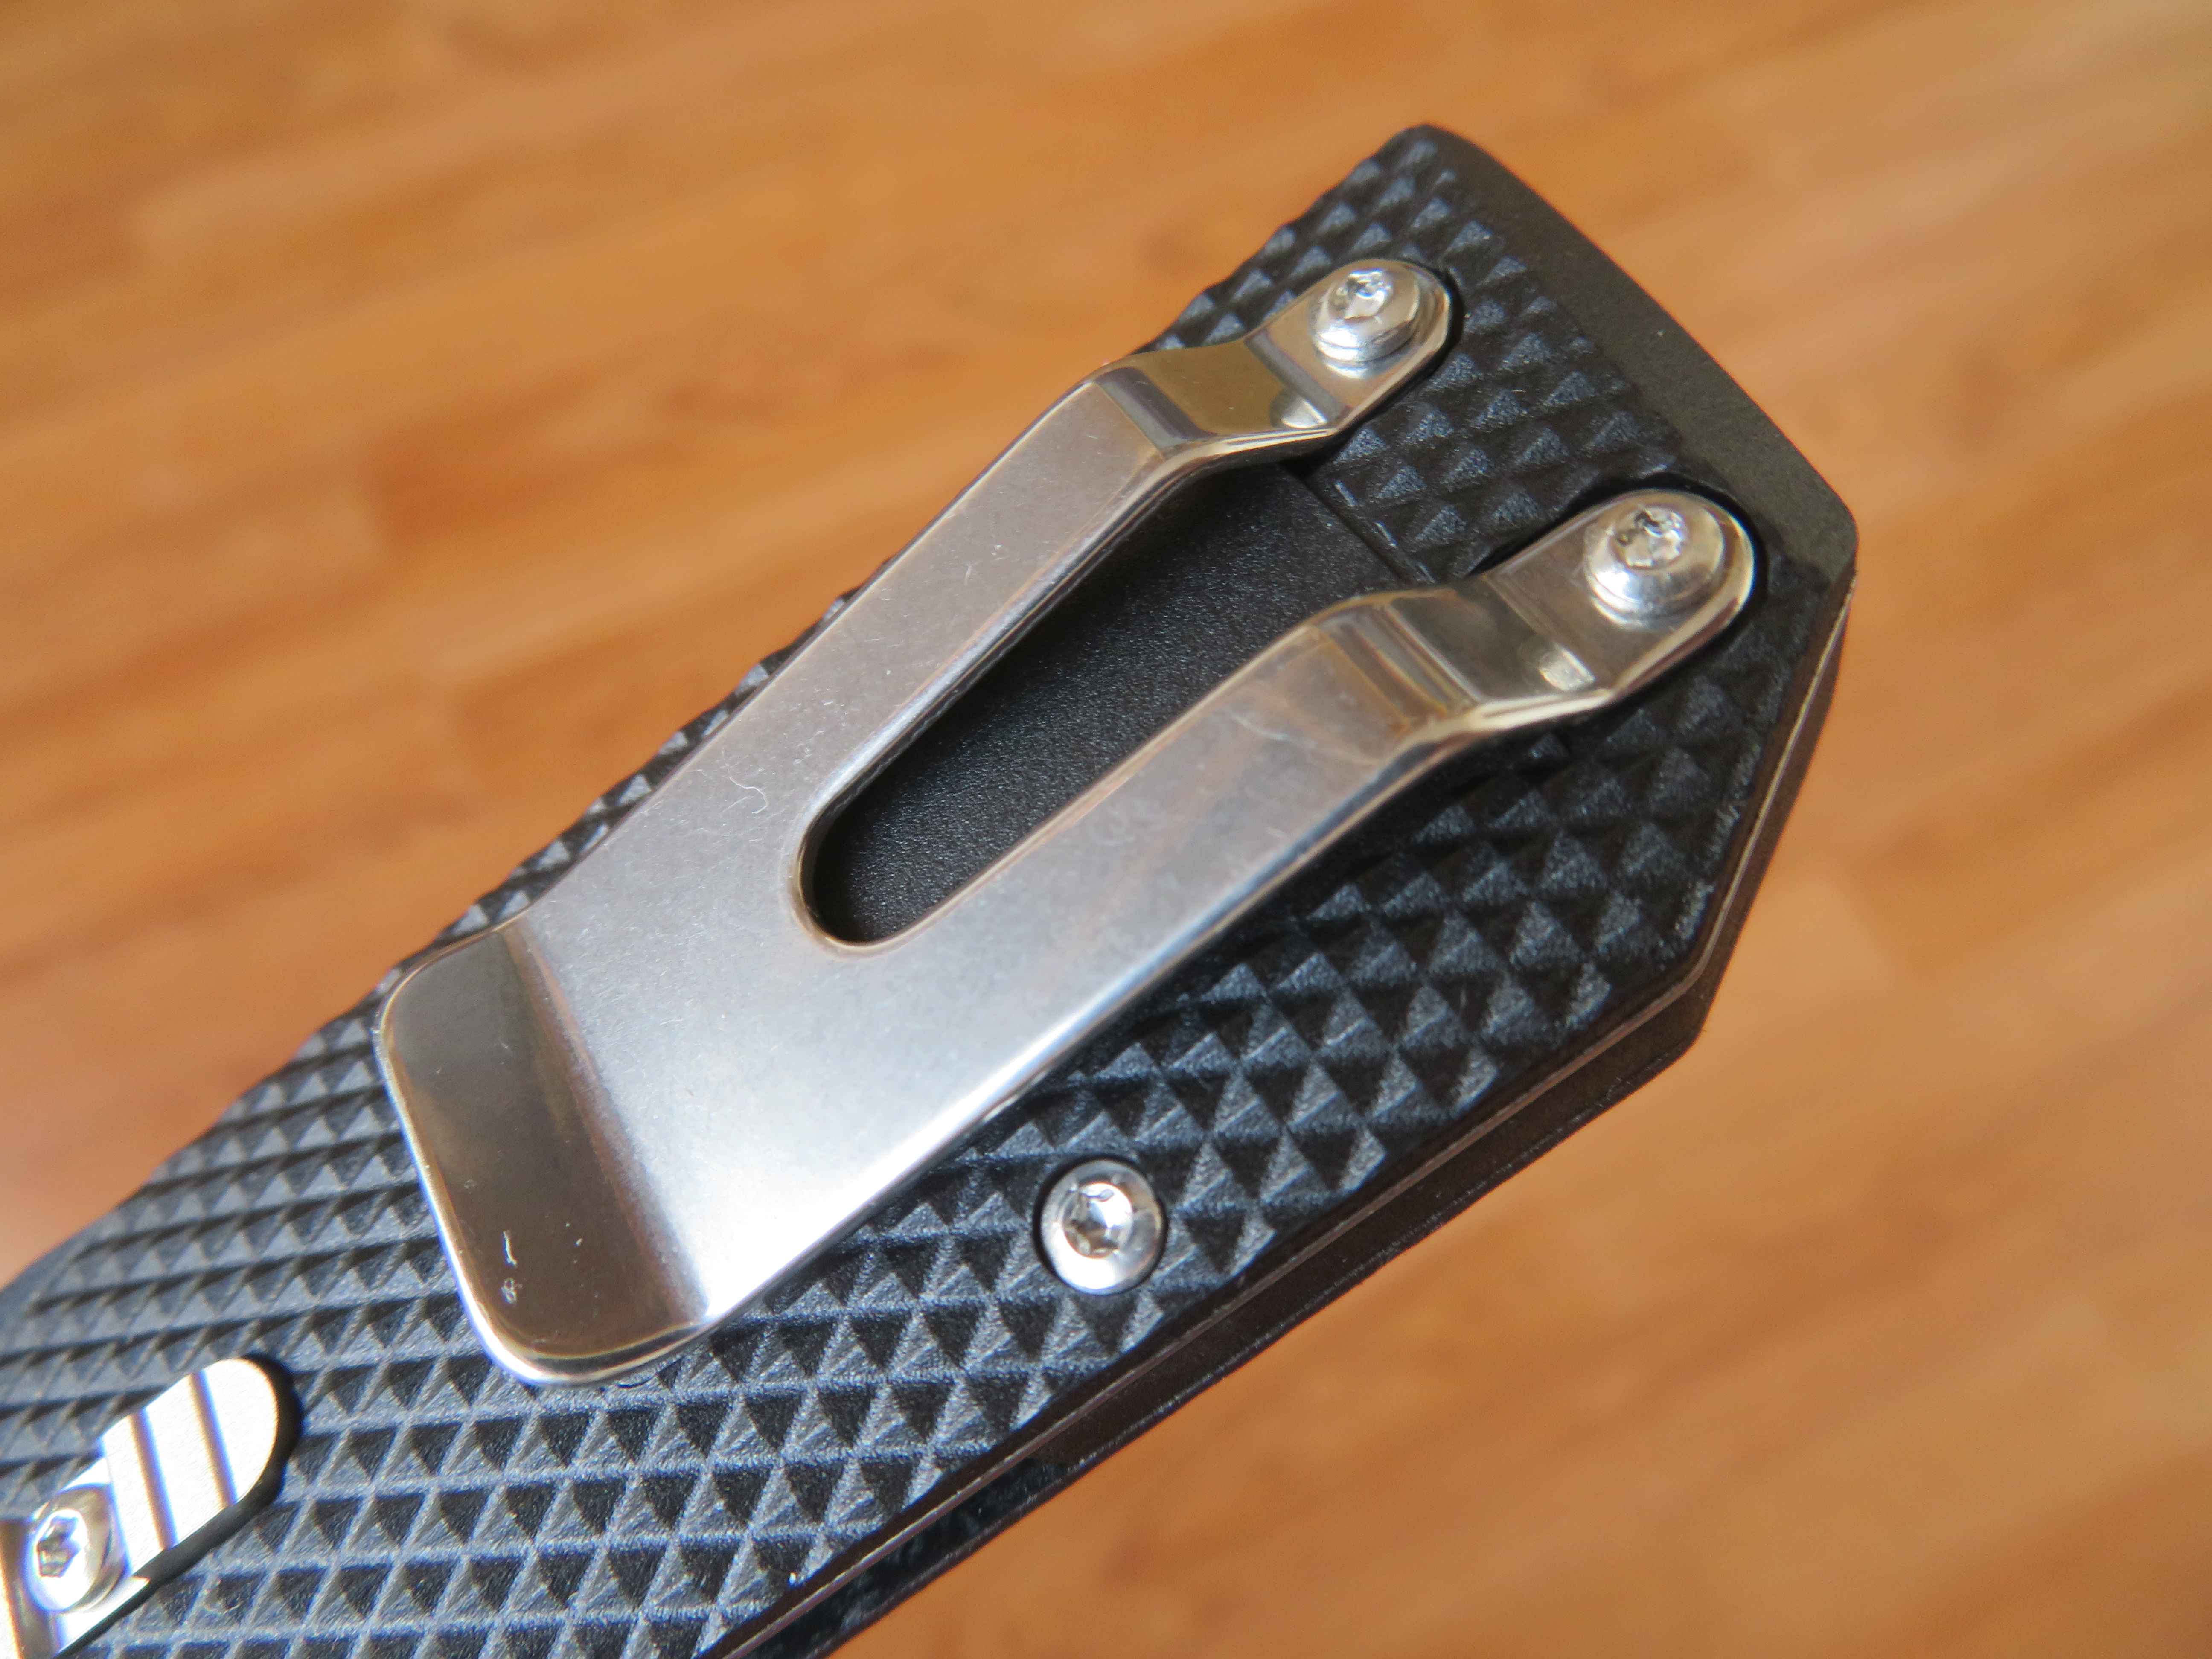 Rukojeť nože Cold Steel 1911 je vyrobena z materiálu Griv-Ex a obsahuje klip za pásek.